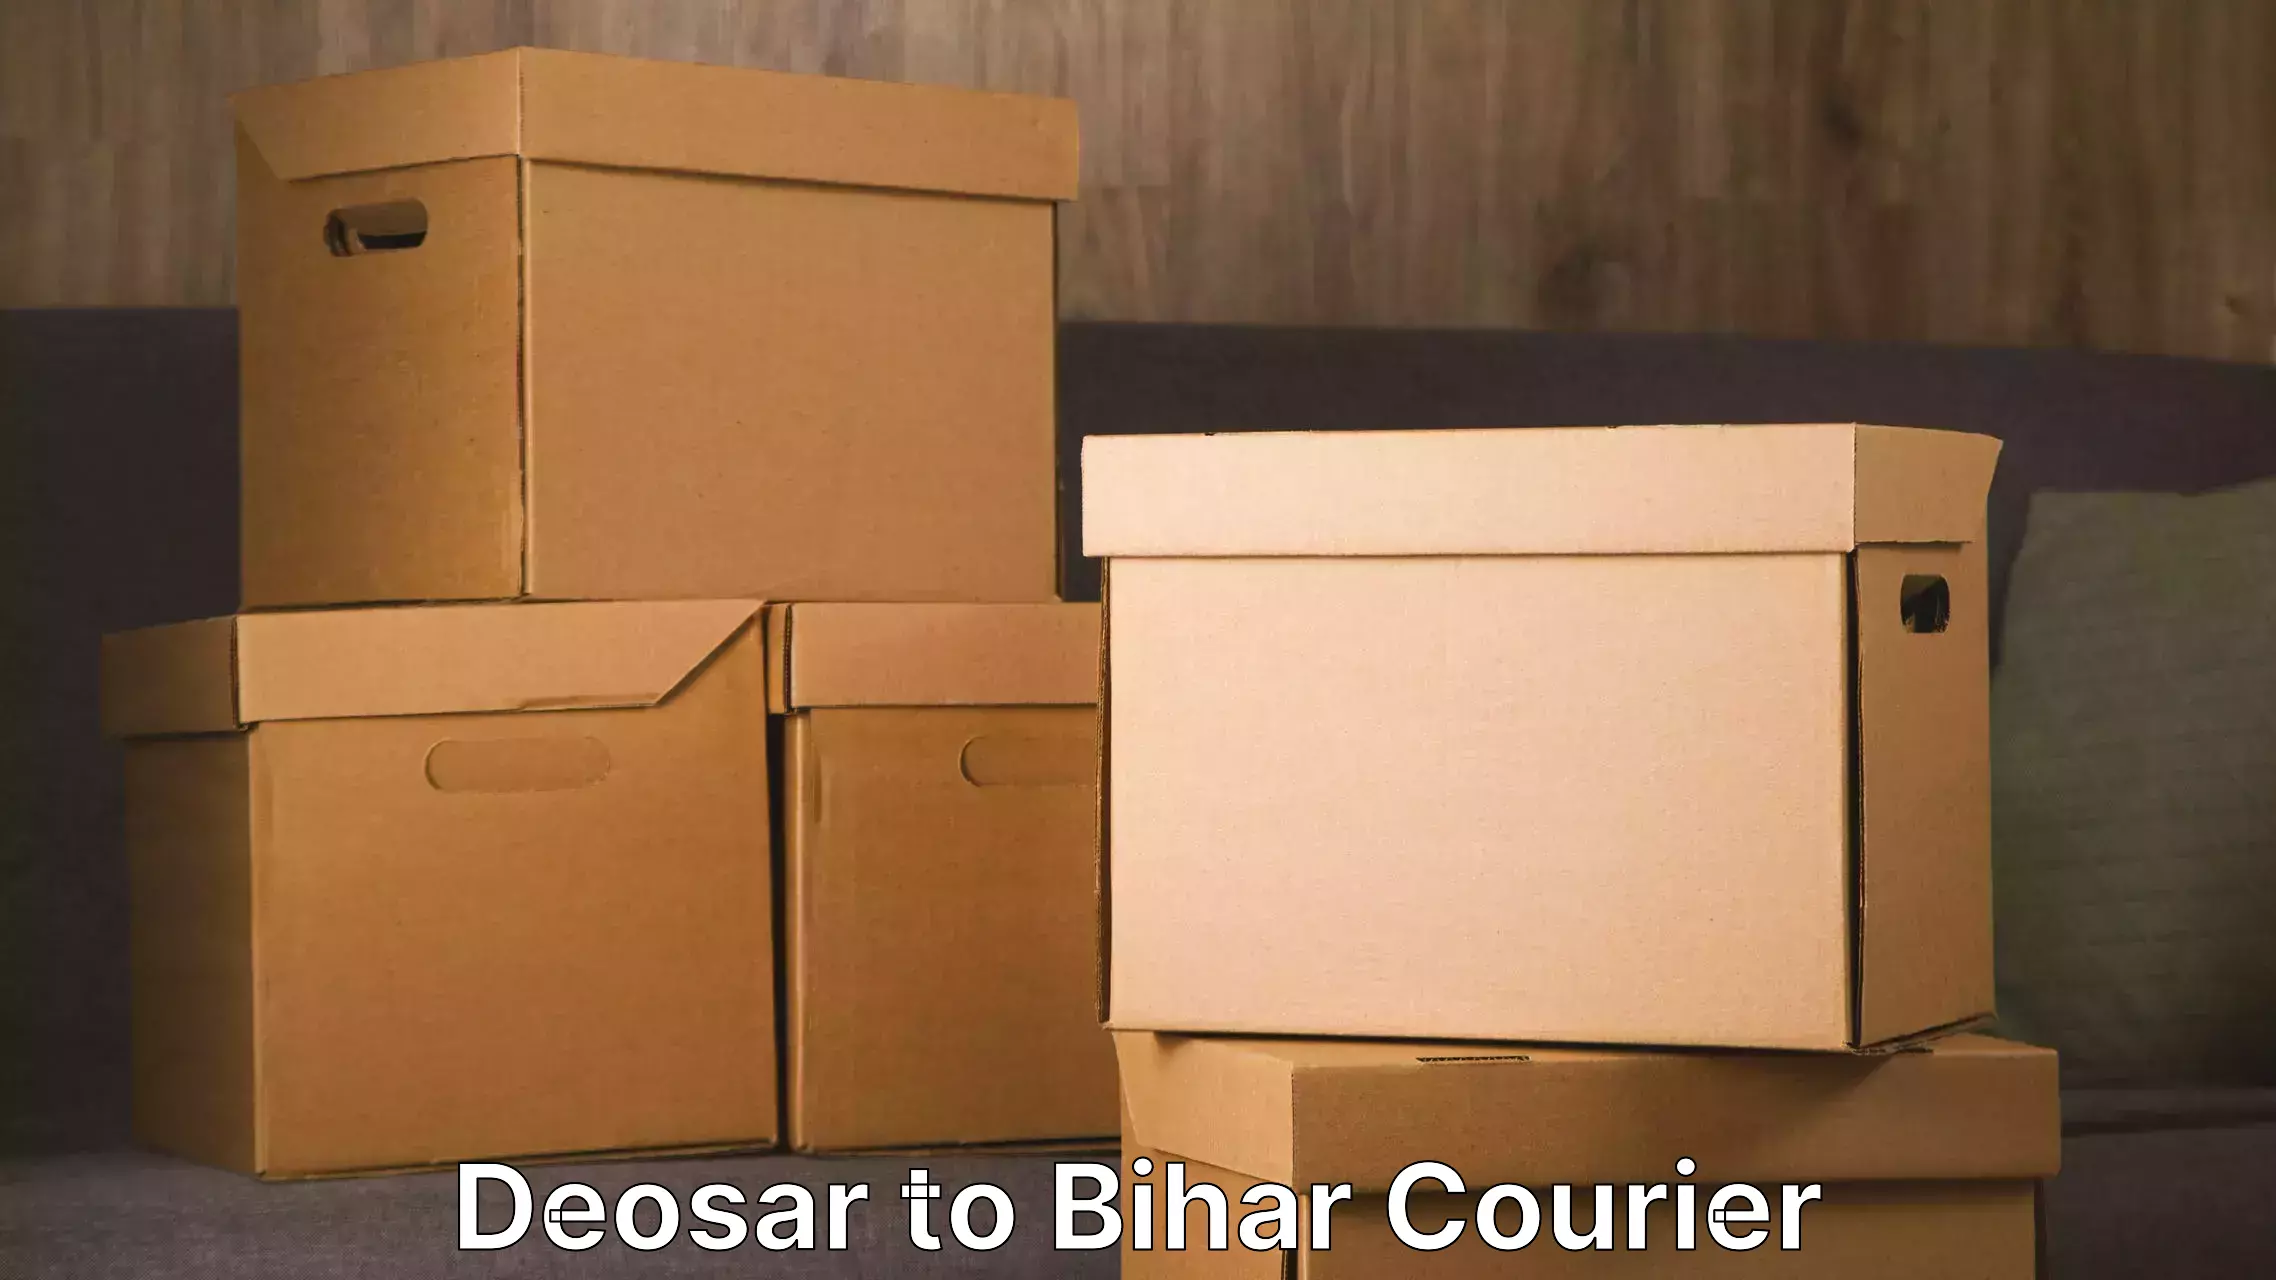 Furniture transport experts Deosar to Banka